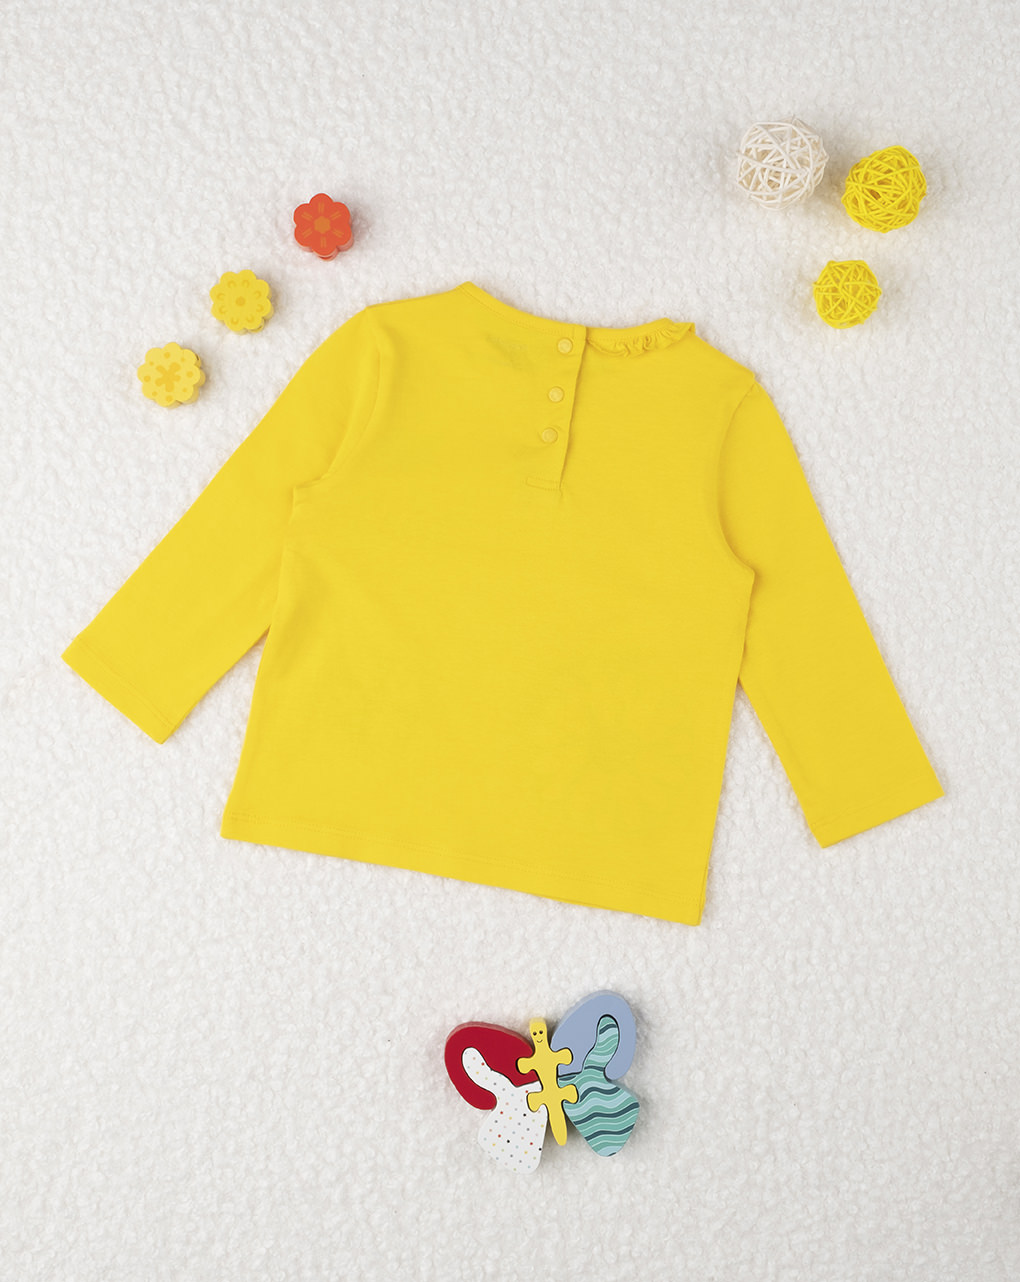 μπλούζα κίτρινη με στάμπες μαργαρίτες για κορίτσι - Prénatal